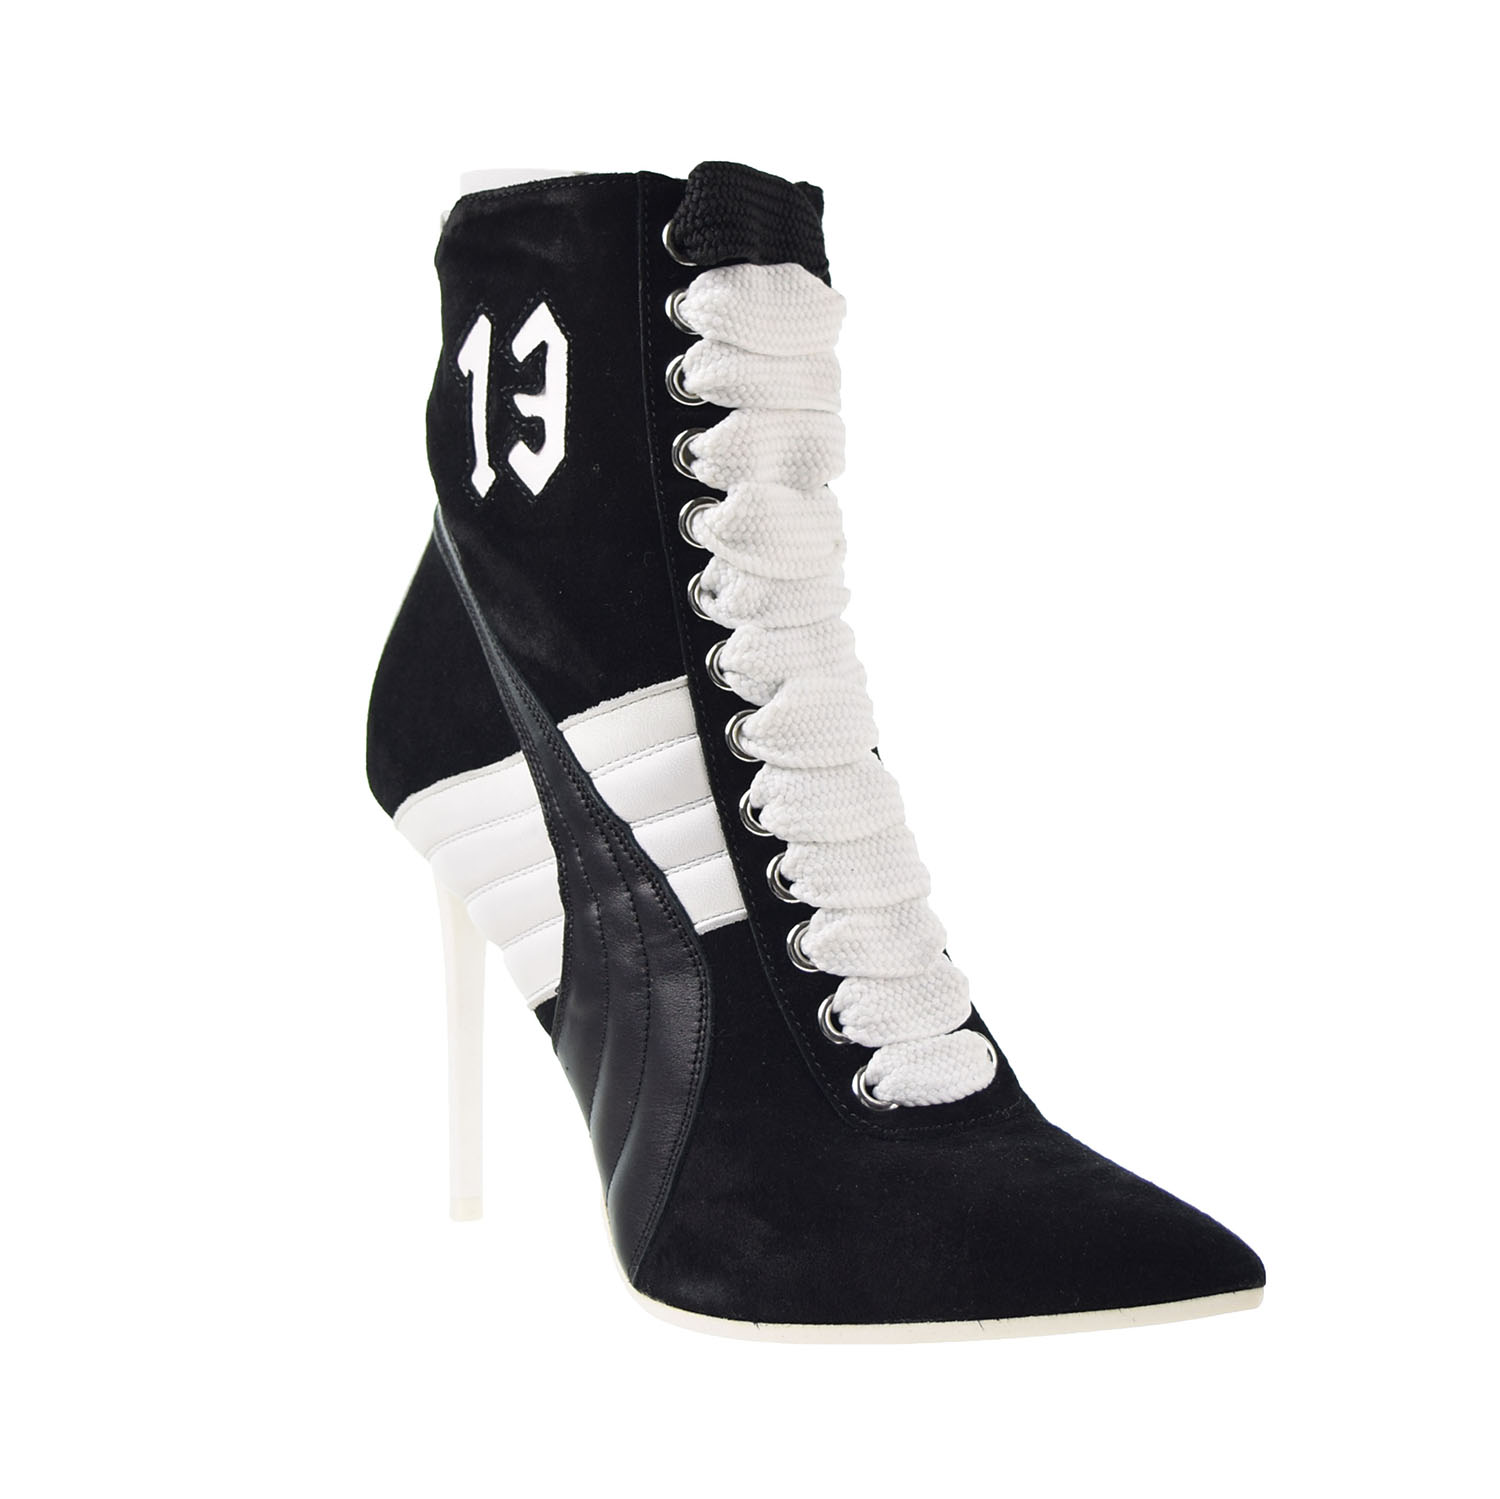 Puma High Heel Suede Rihanna Women's Shoes Puma Black-White 363706-01 ...